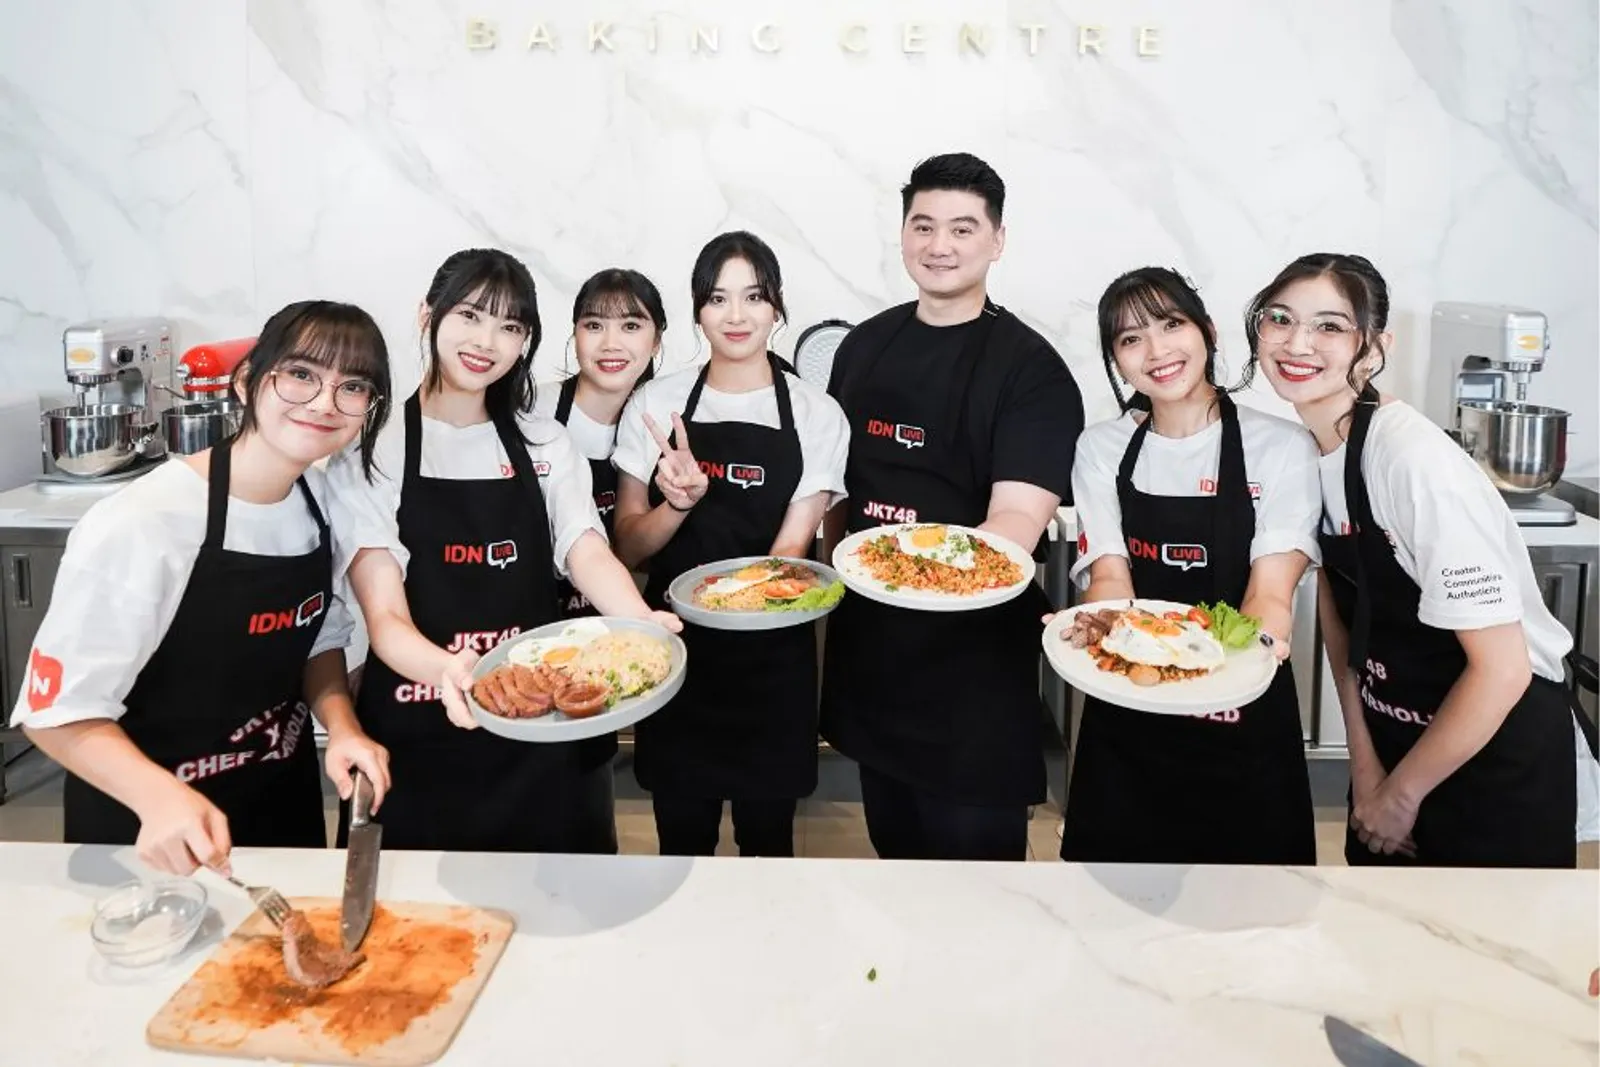 Tantangan Memasak Buat Idol di Teman Masak: JKT48 x Chef Arnold